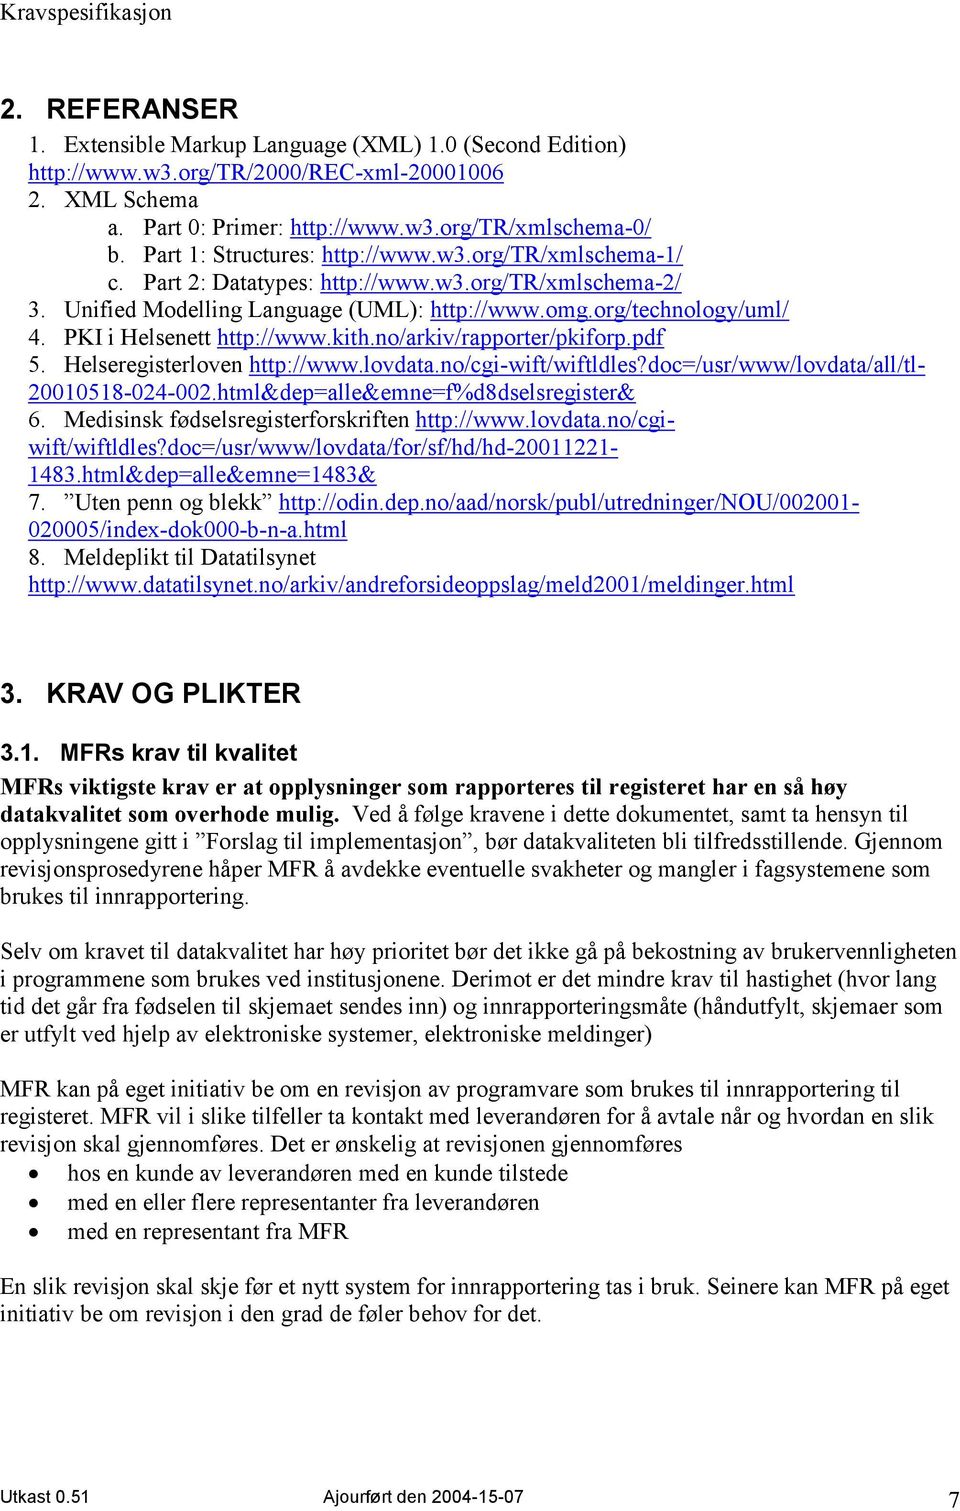 PKI i Helsenett http://www.kith.no/arkiv/rapporter/pkiforp.pdf 5. Helseregisterloven http://www.lovdata.no/cgi-wift/wiftldles?doc=/usr/www/lovdata/all/tl- 20010518-024-002.